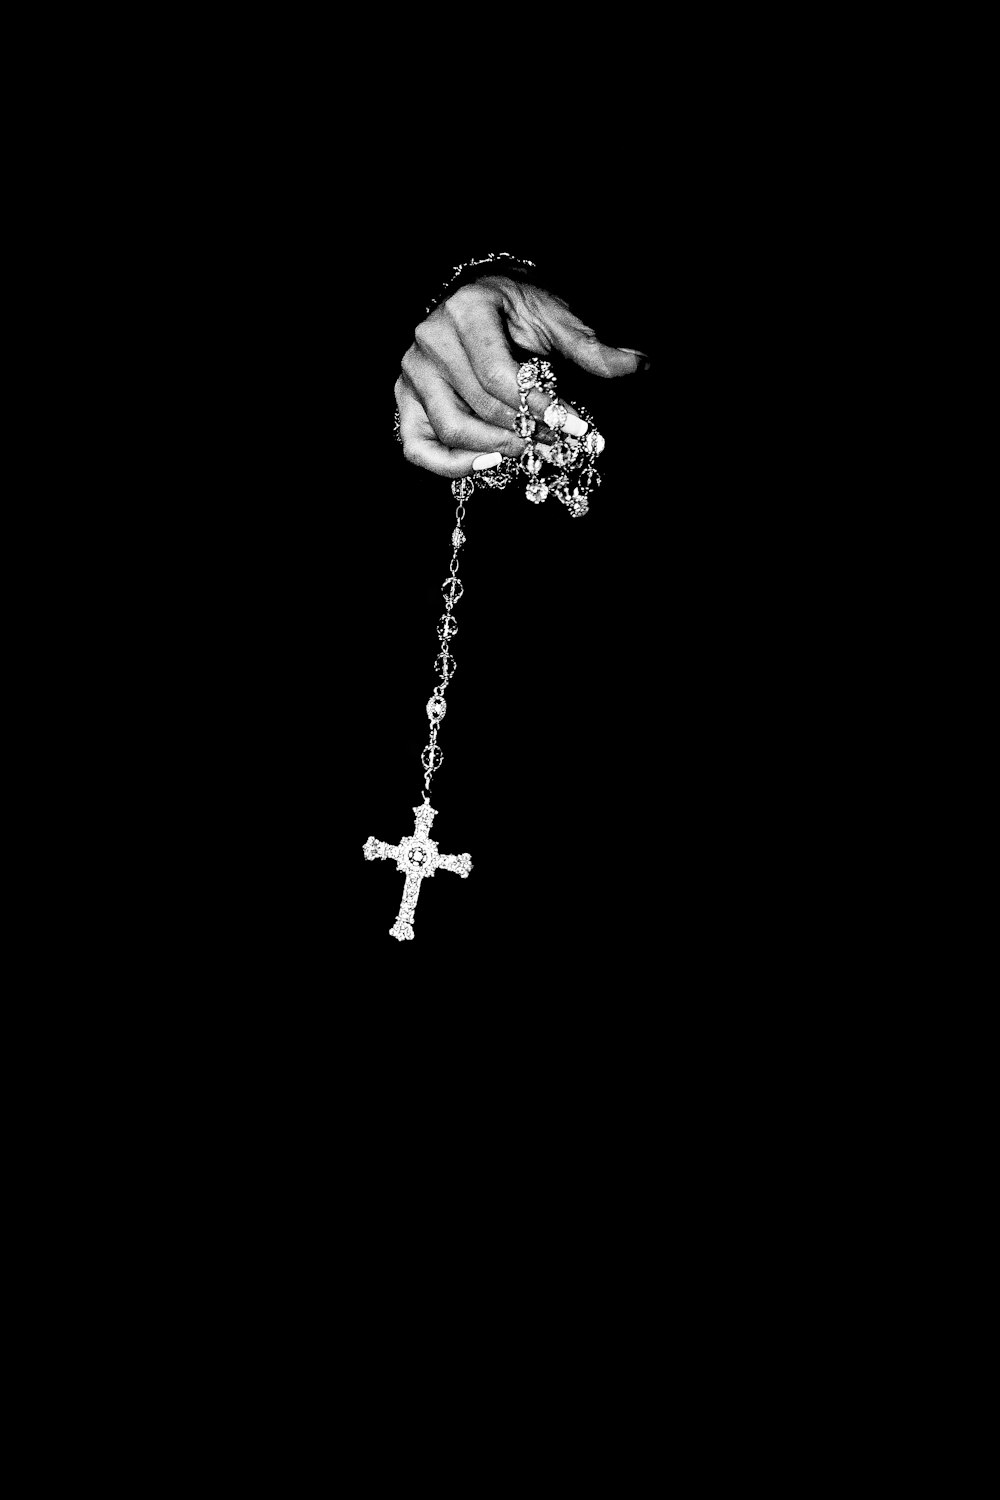 Persona con rosario de plata